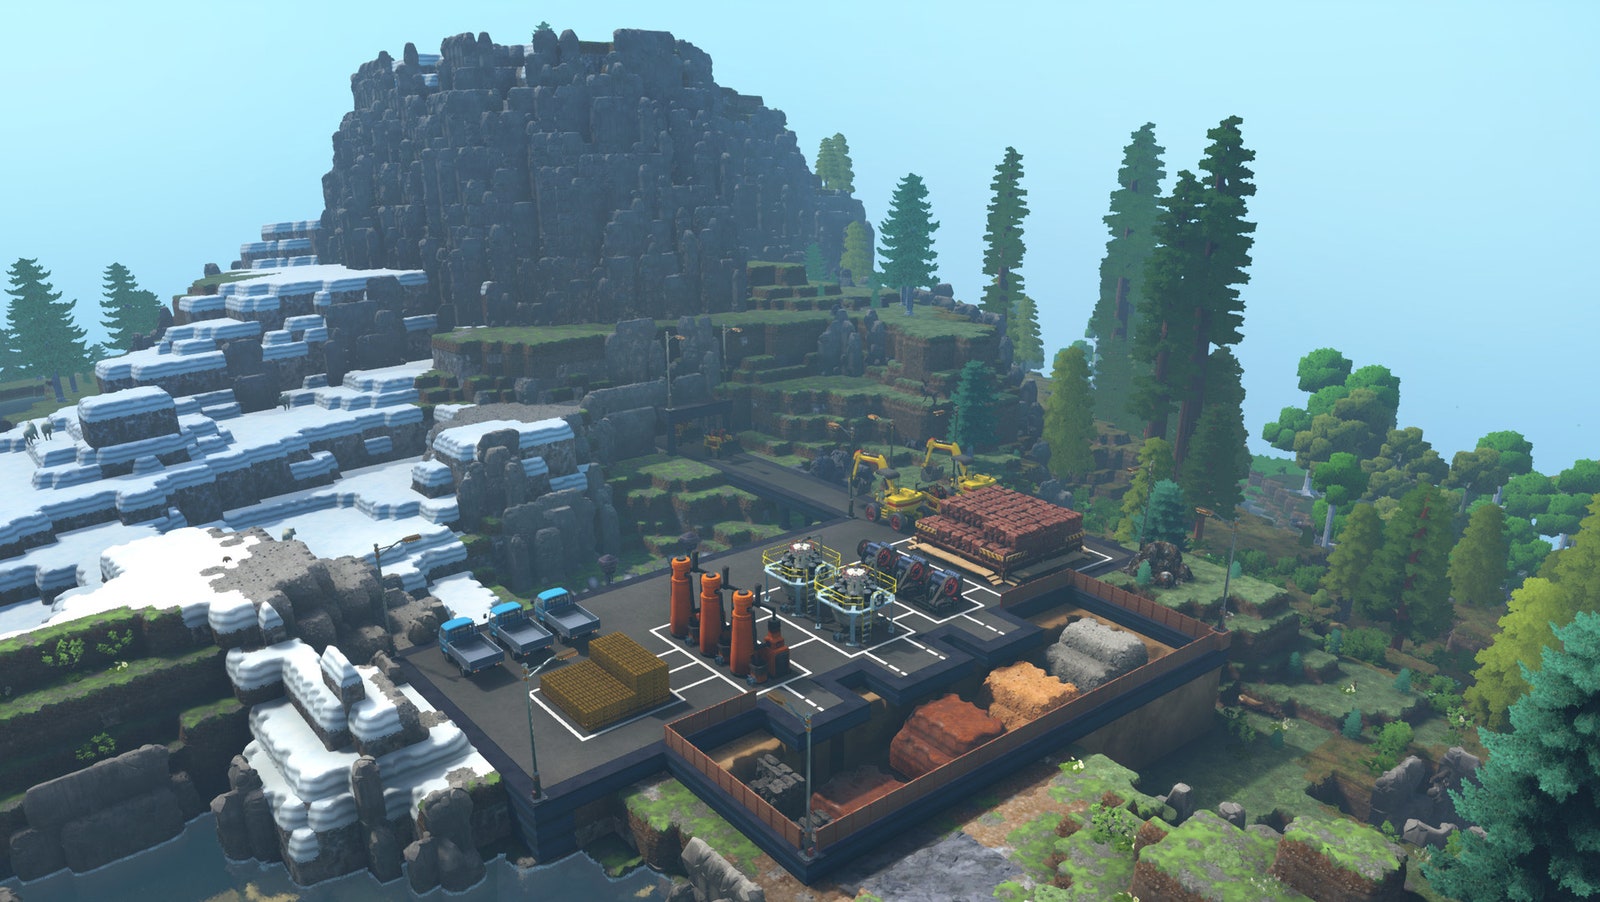 Captura de pantalla del juego ecológico con una gran fábrica en un entorno montañoso